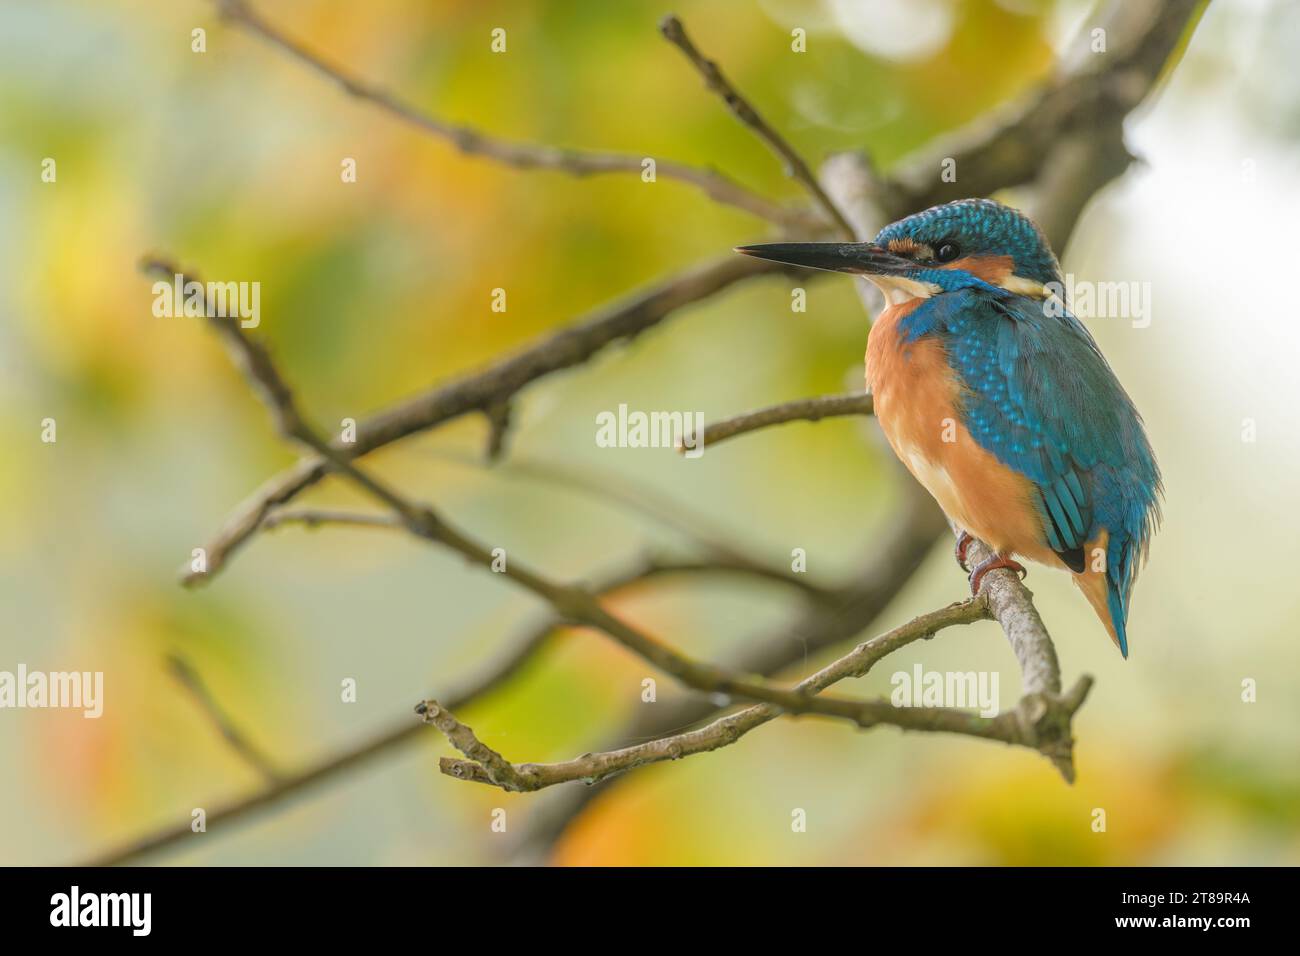 Kingfisher (Alcedo atthis) perché dans un arbre. Bas-Rhin, Collectivite européenne d'Alsace,Grand est, France, Europe. Banque D'Images